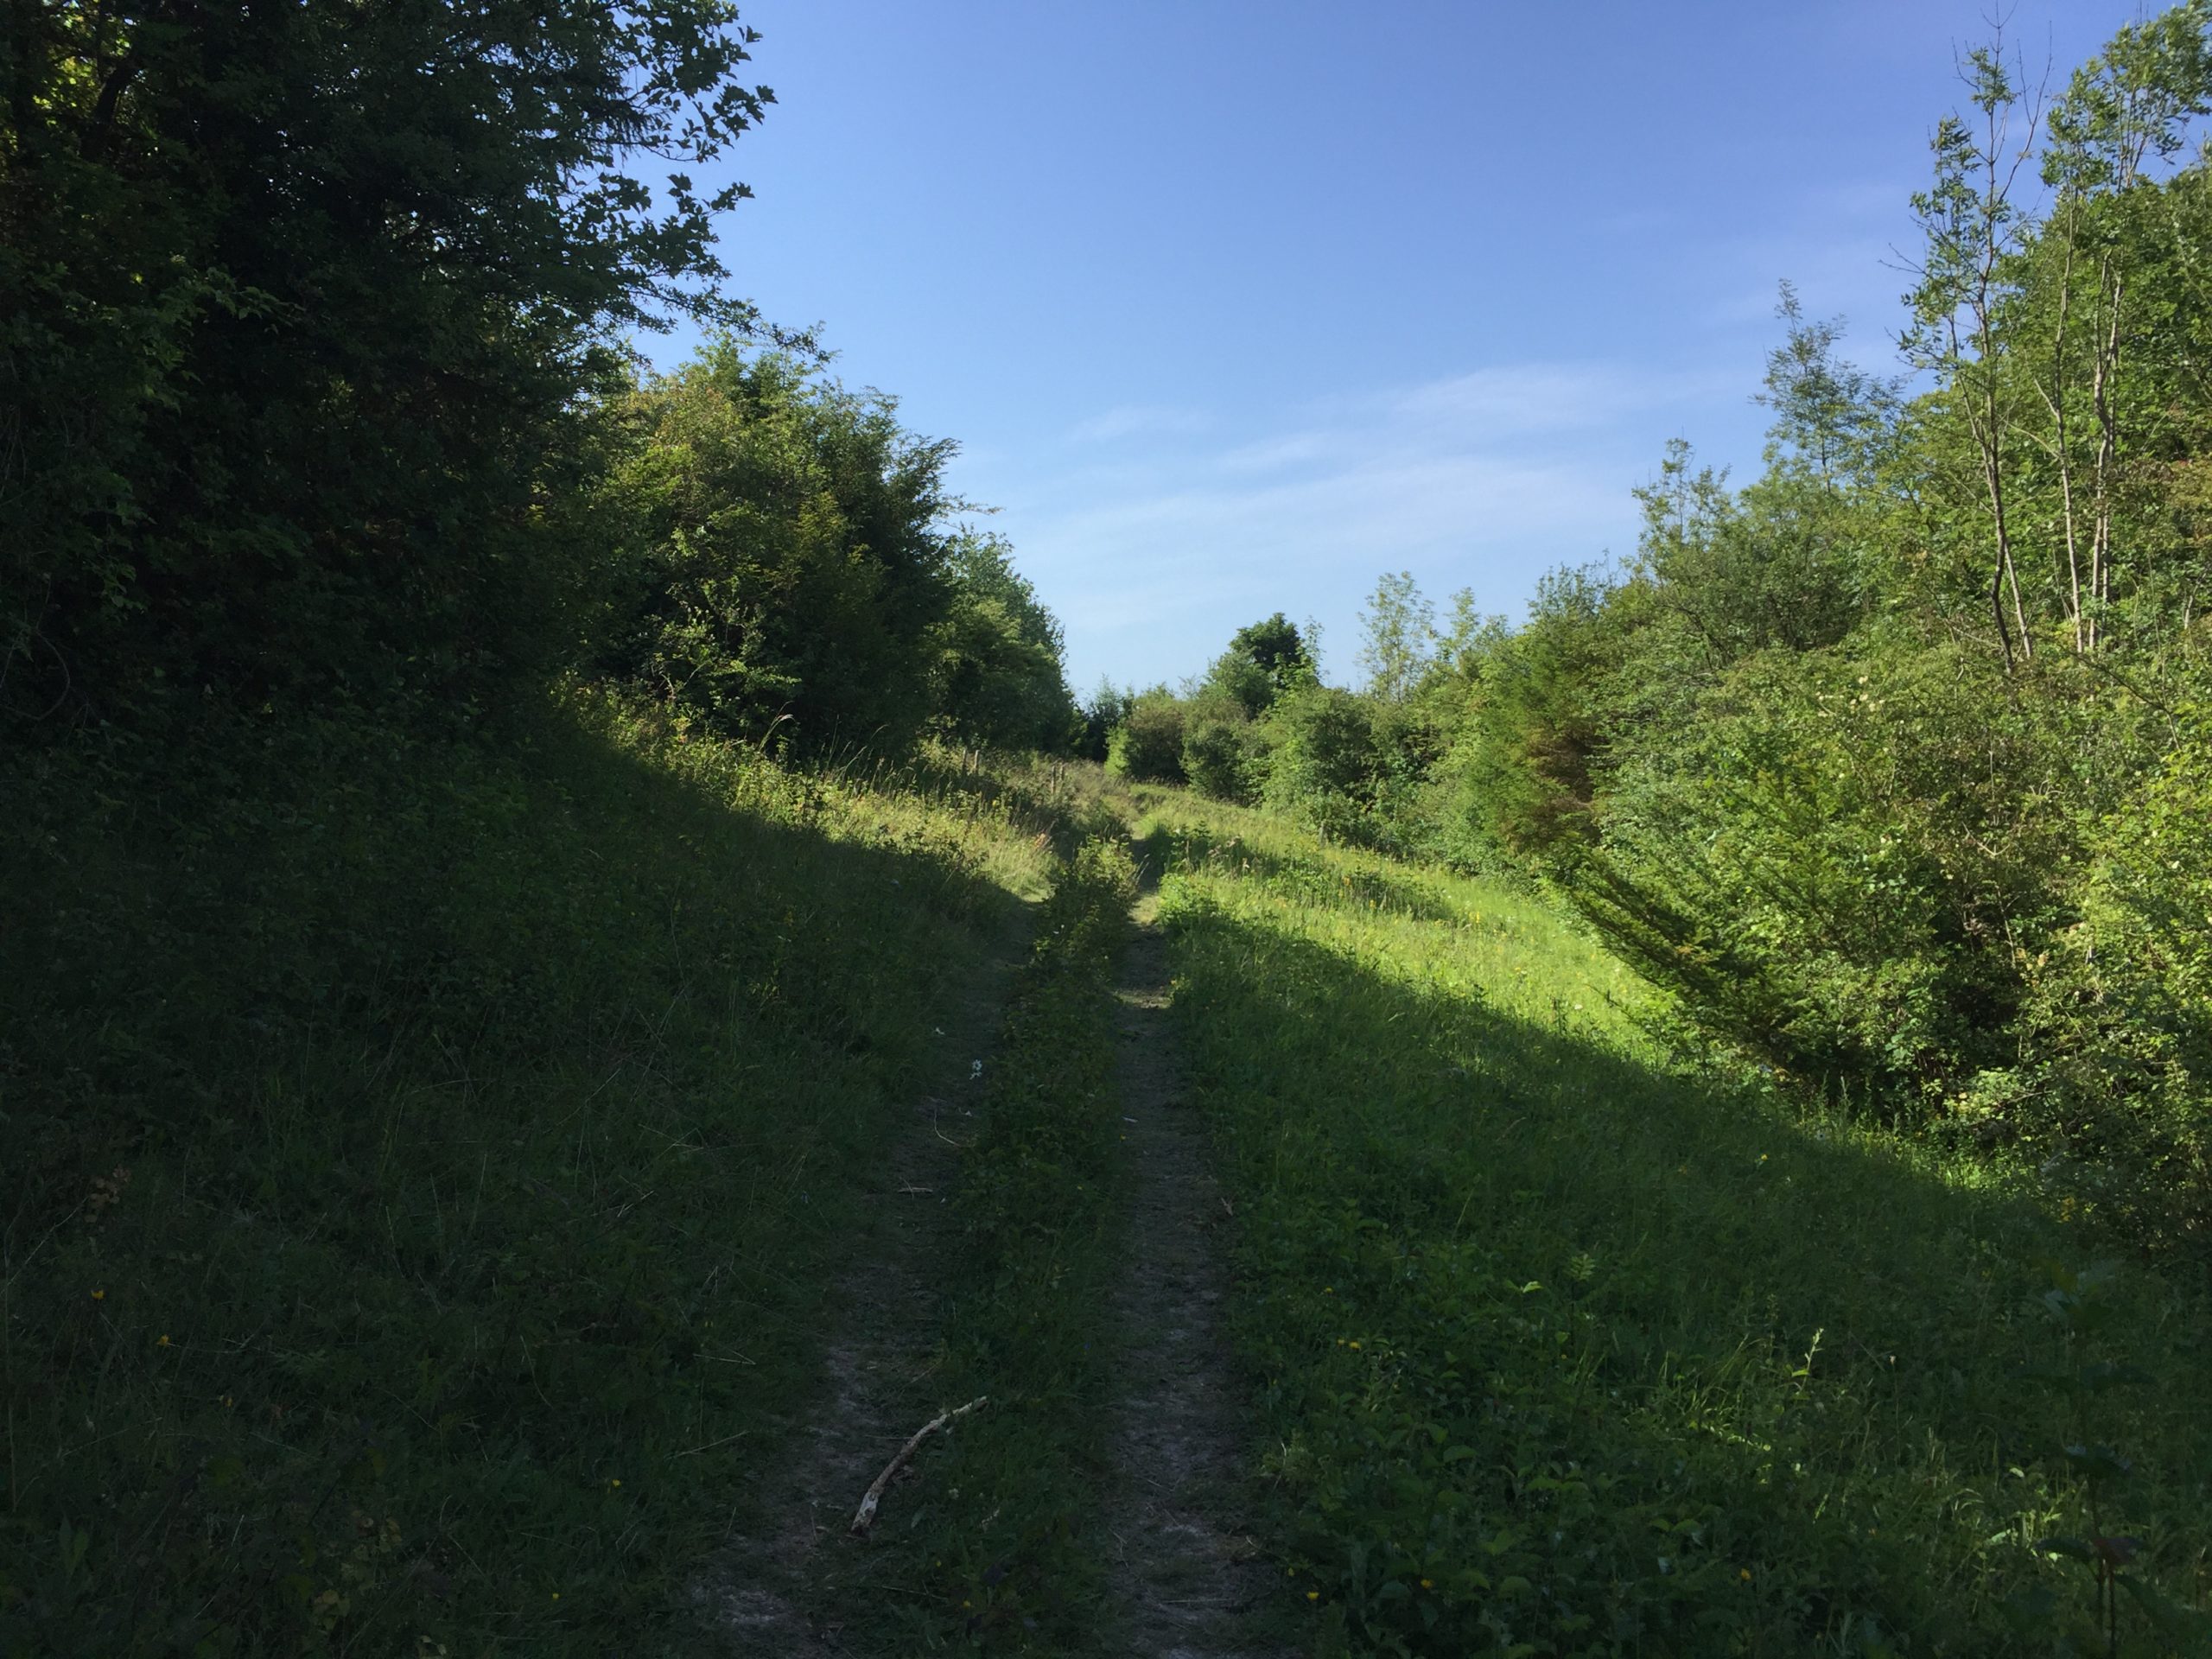 Path through grassland in summer